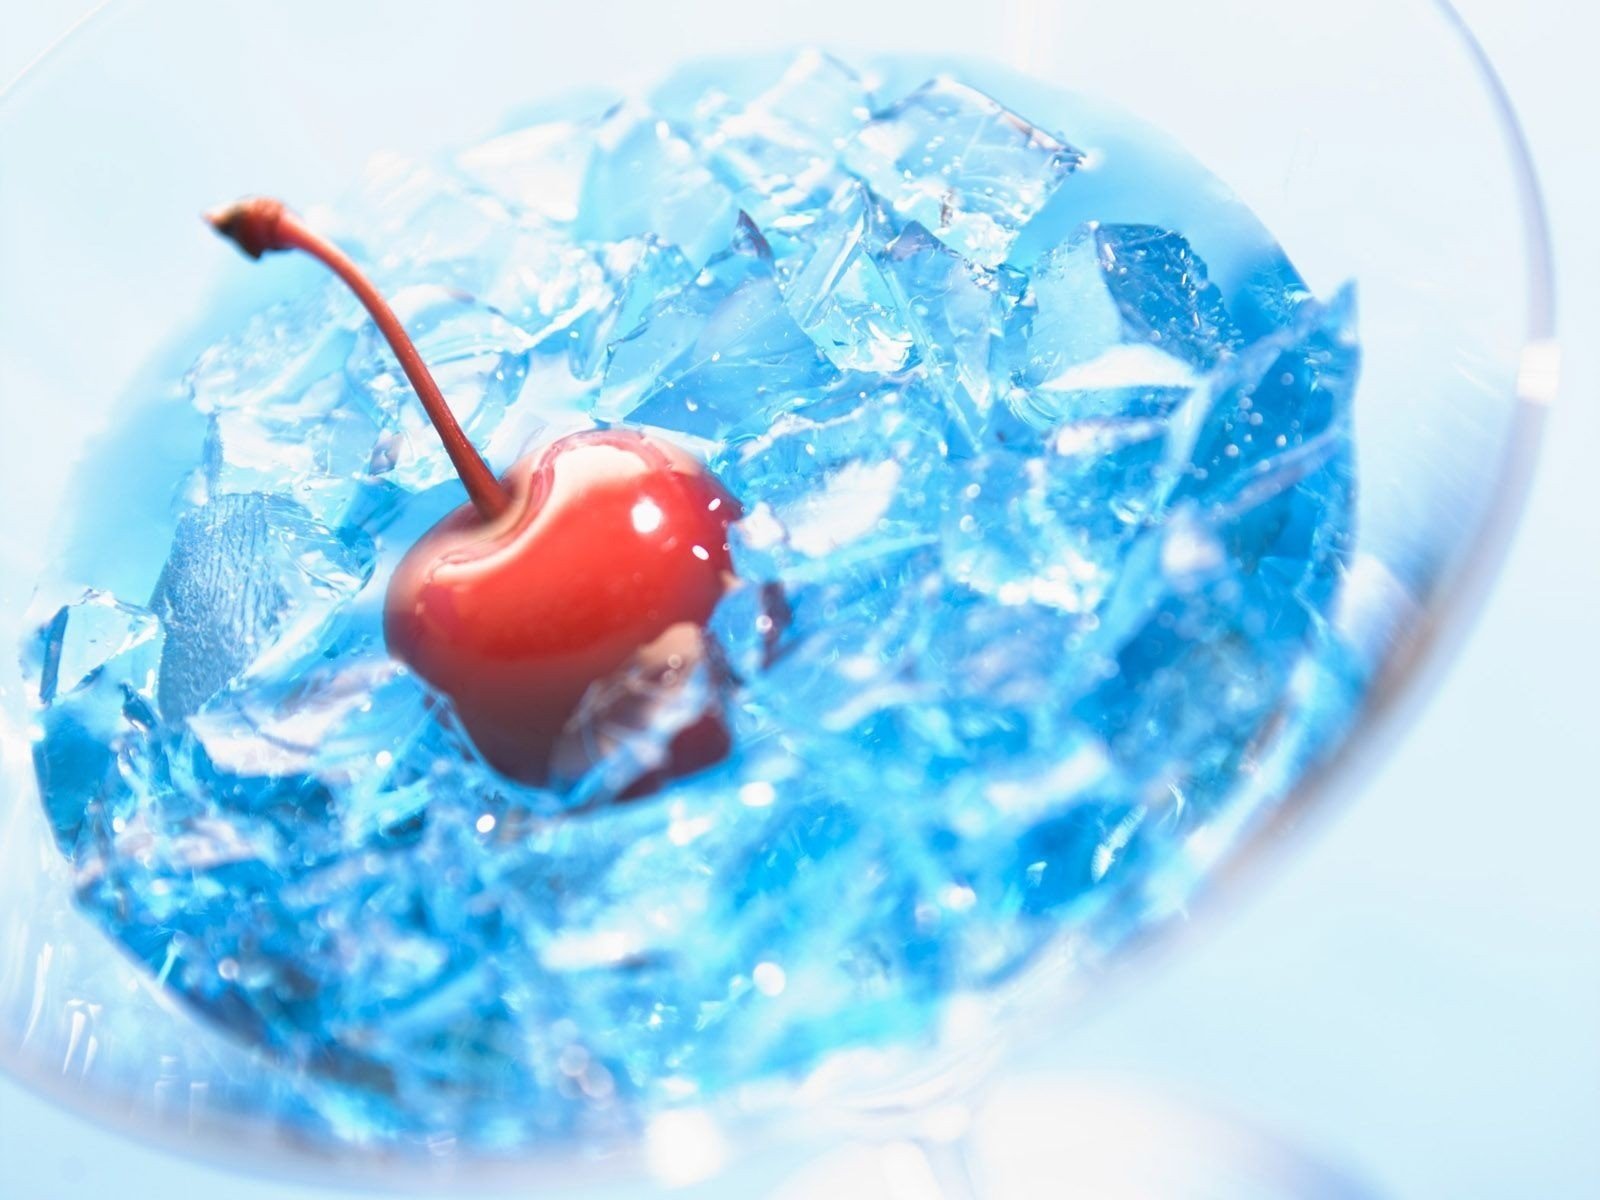 cherries, Ice cubes, Liquid Wallpaper